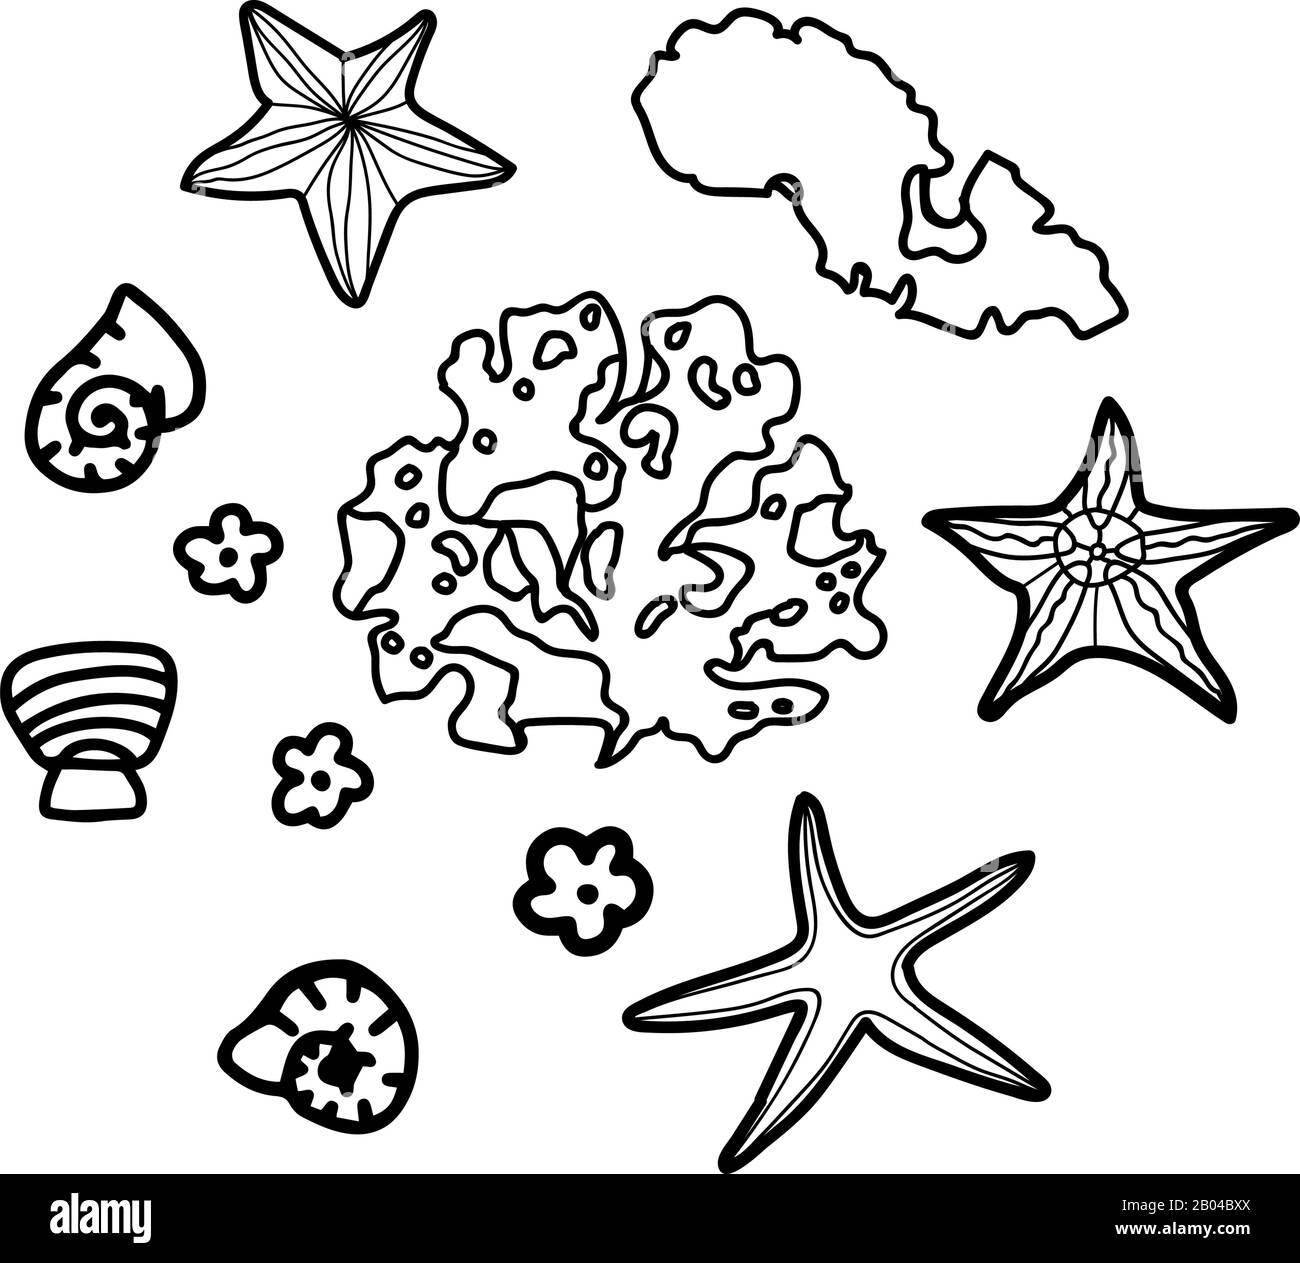 Mit Meeresalgen, Seesterne, Muscheln im Doodle-Stil, isoliert auf weißem Hintergrund.Underwater. Abbildung der Vektorkonturen. Stock Vektor